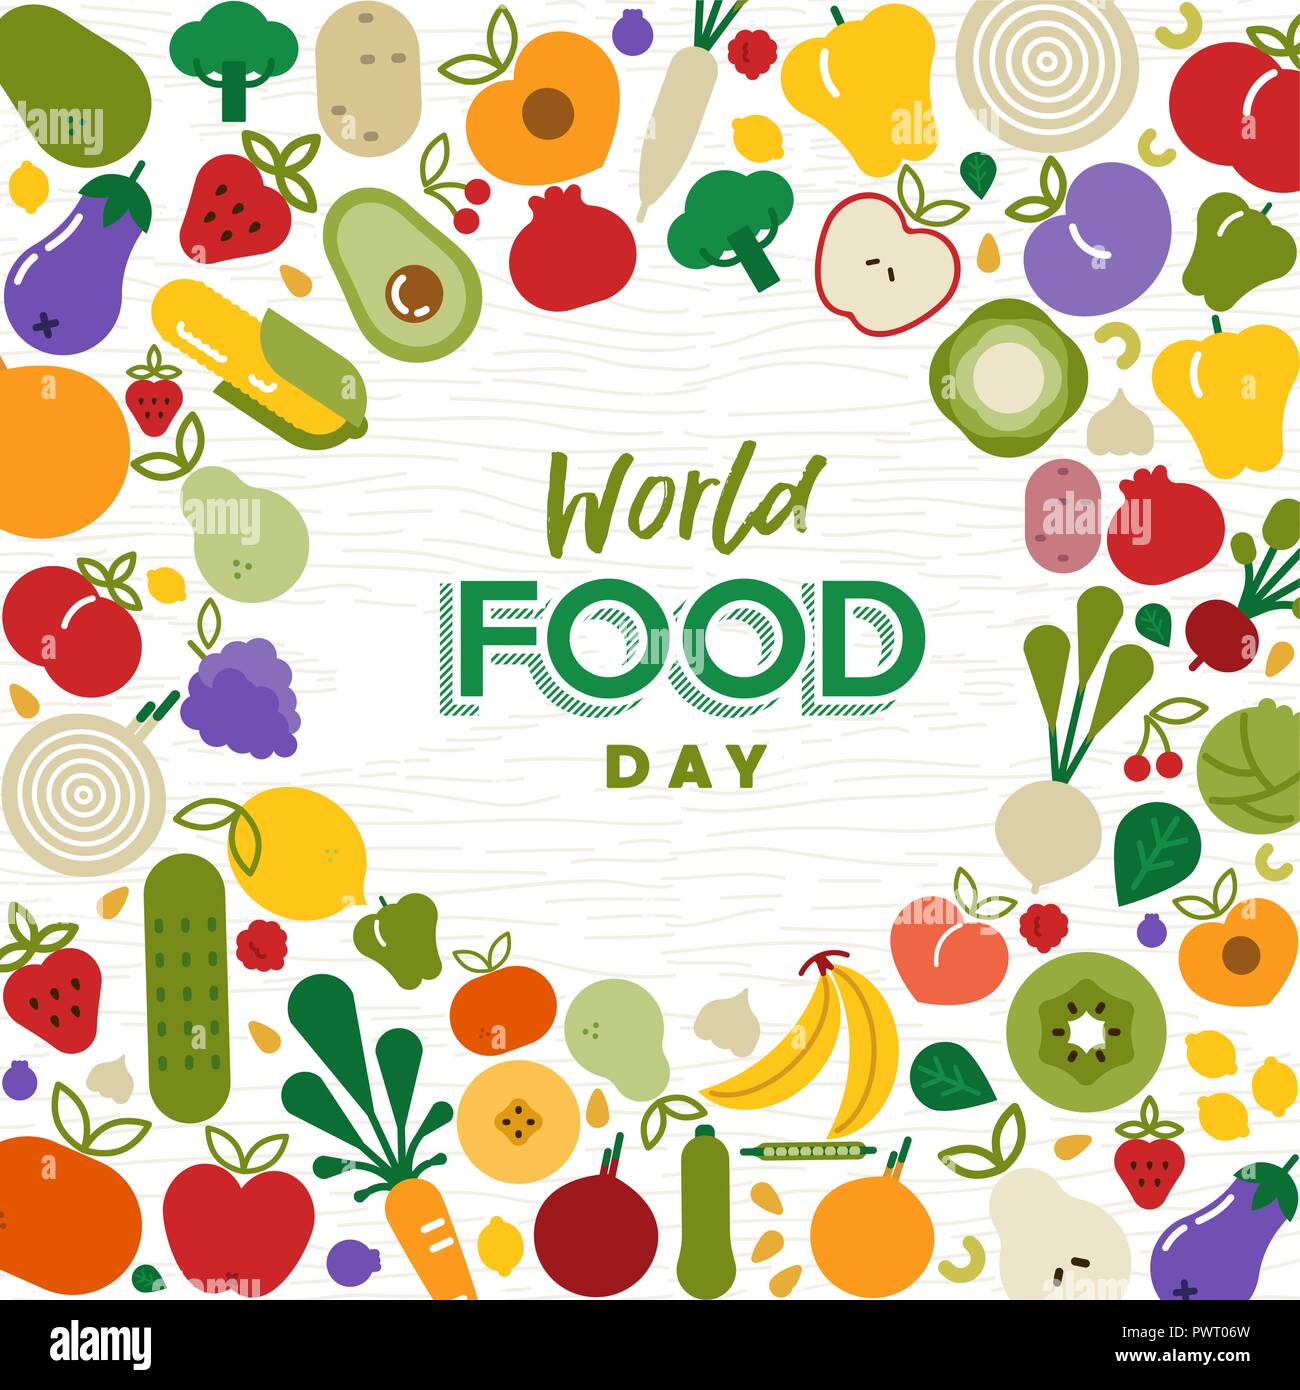 Welternährungstag Grußkarte Illustration für Ernährung oder gesunde Ernährung mit bunten Flachbild cartoon Symbole. Mit Gemüse und Obst. Stock Vektor